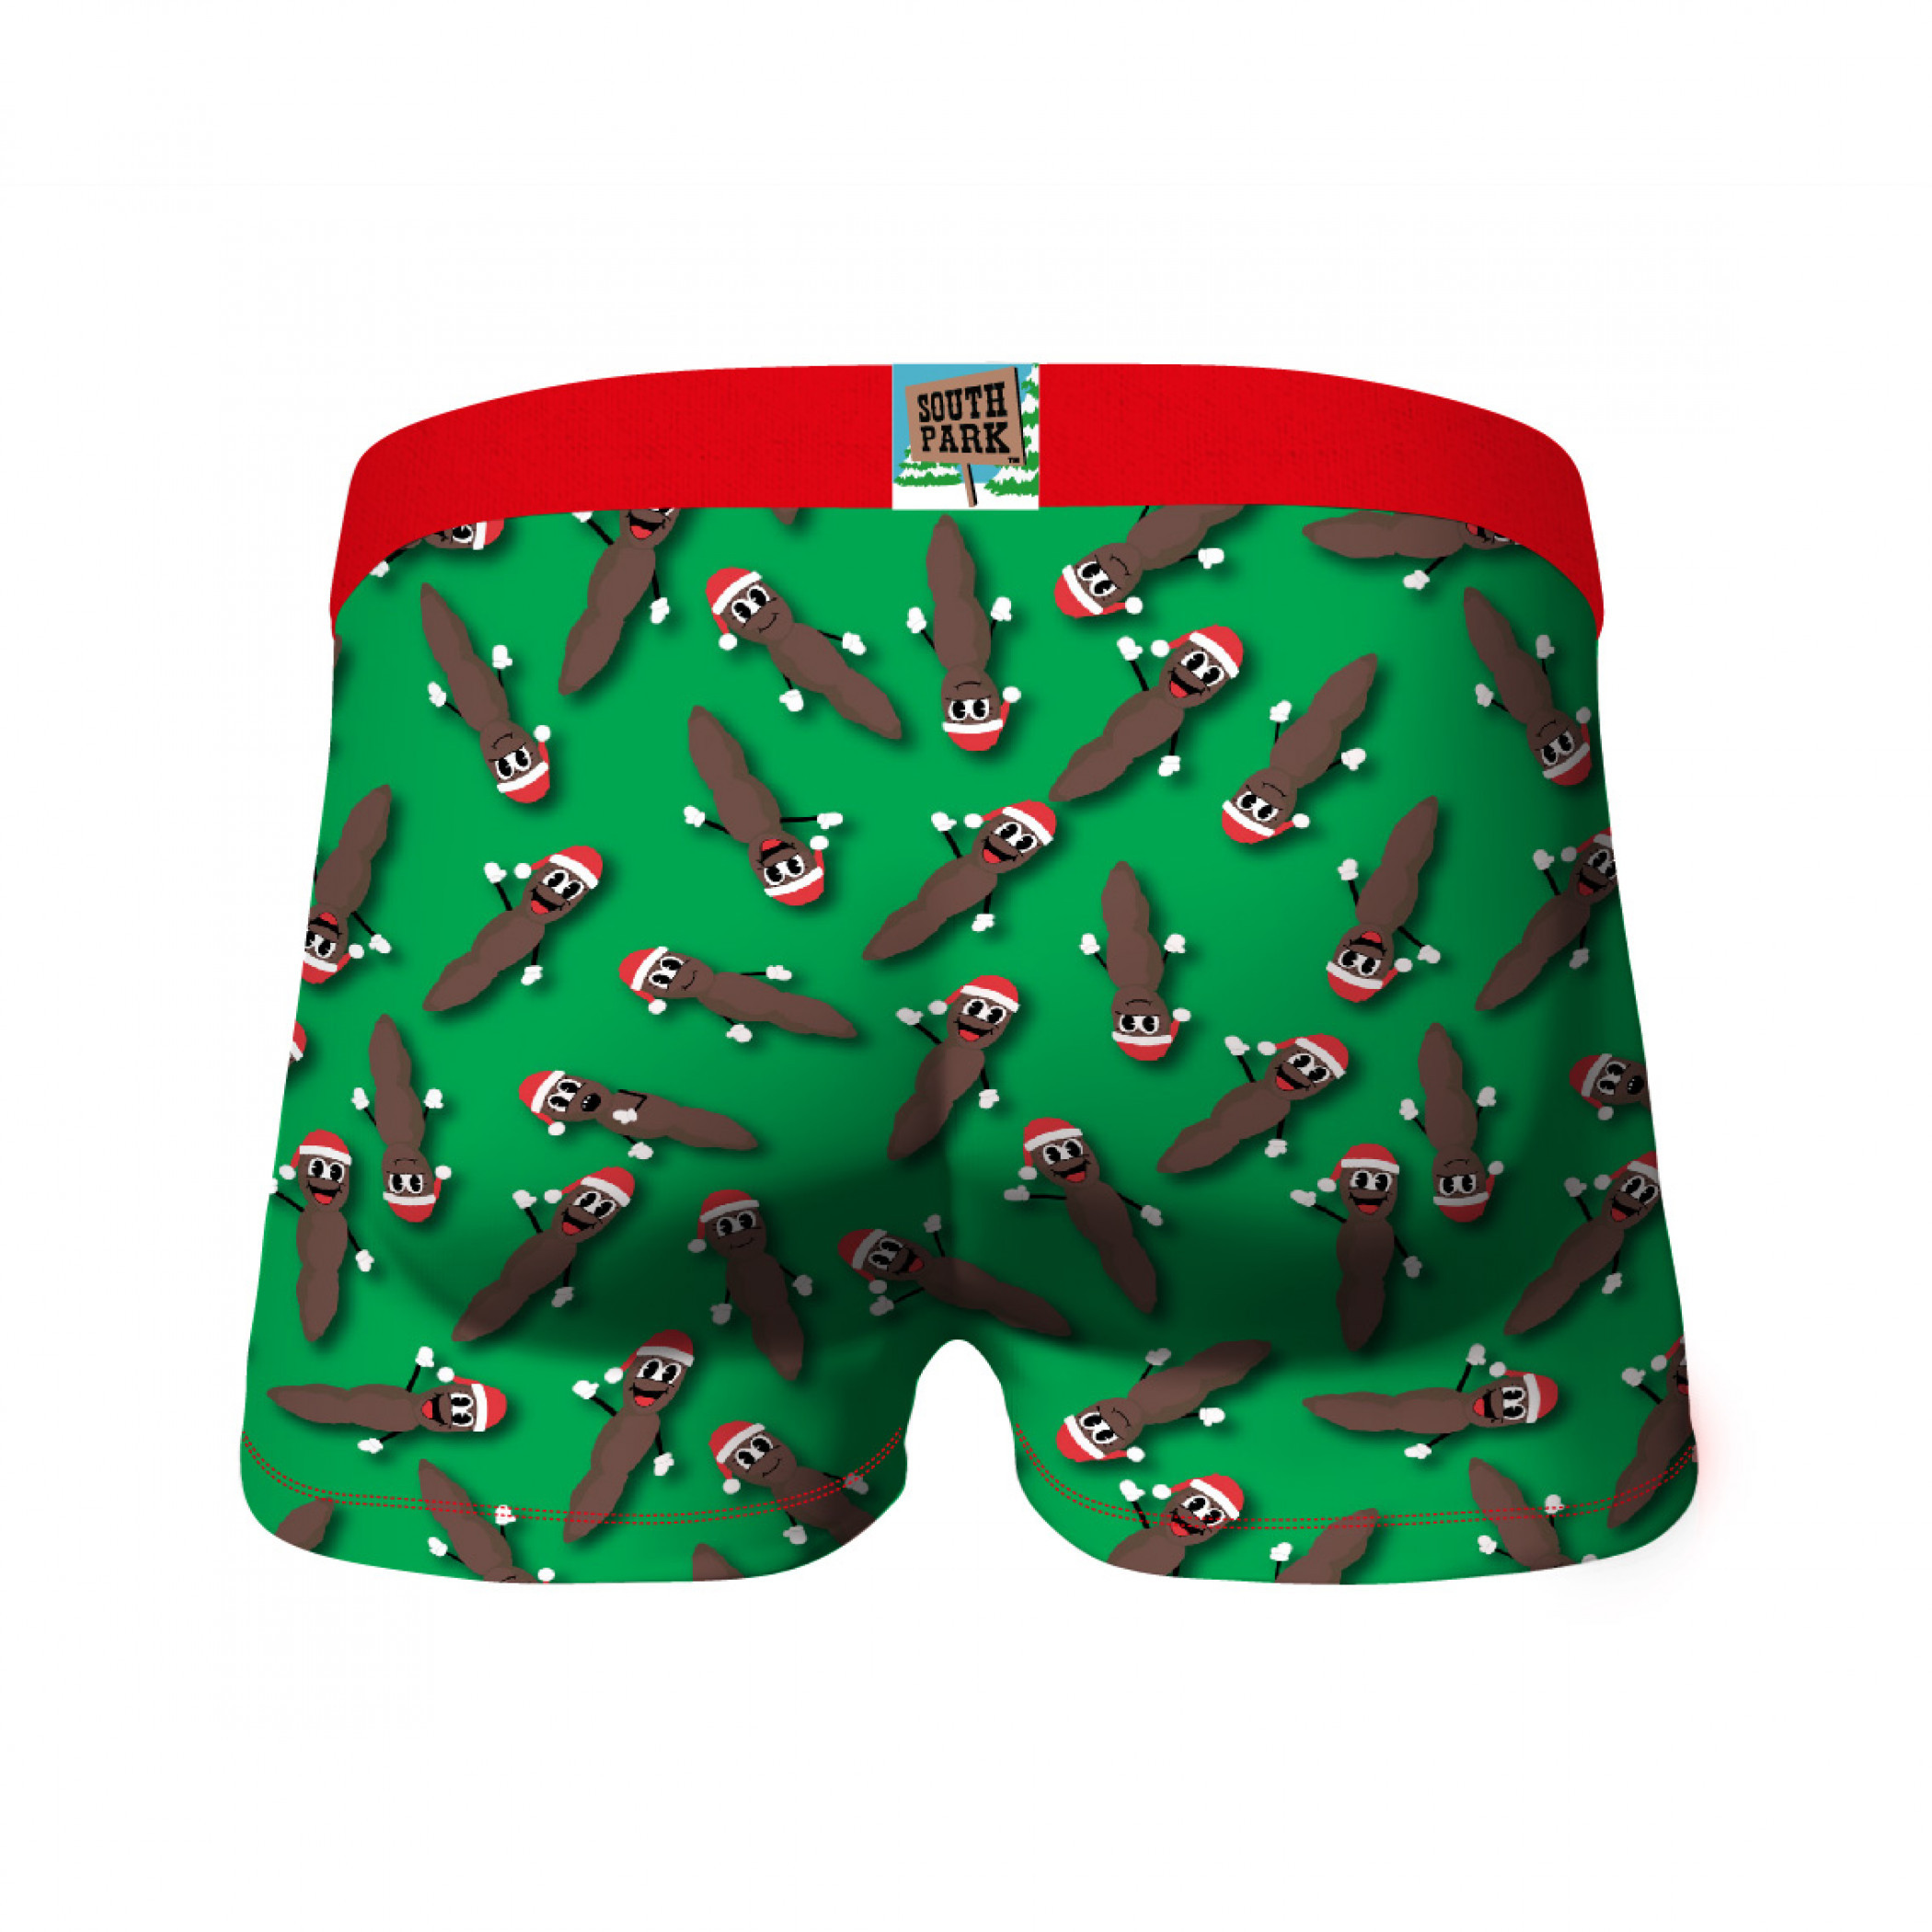 South Park Cartman Santa & Mr. Hankey 2-pack Underwear Boxer Briefs